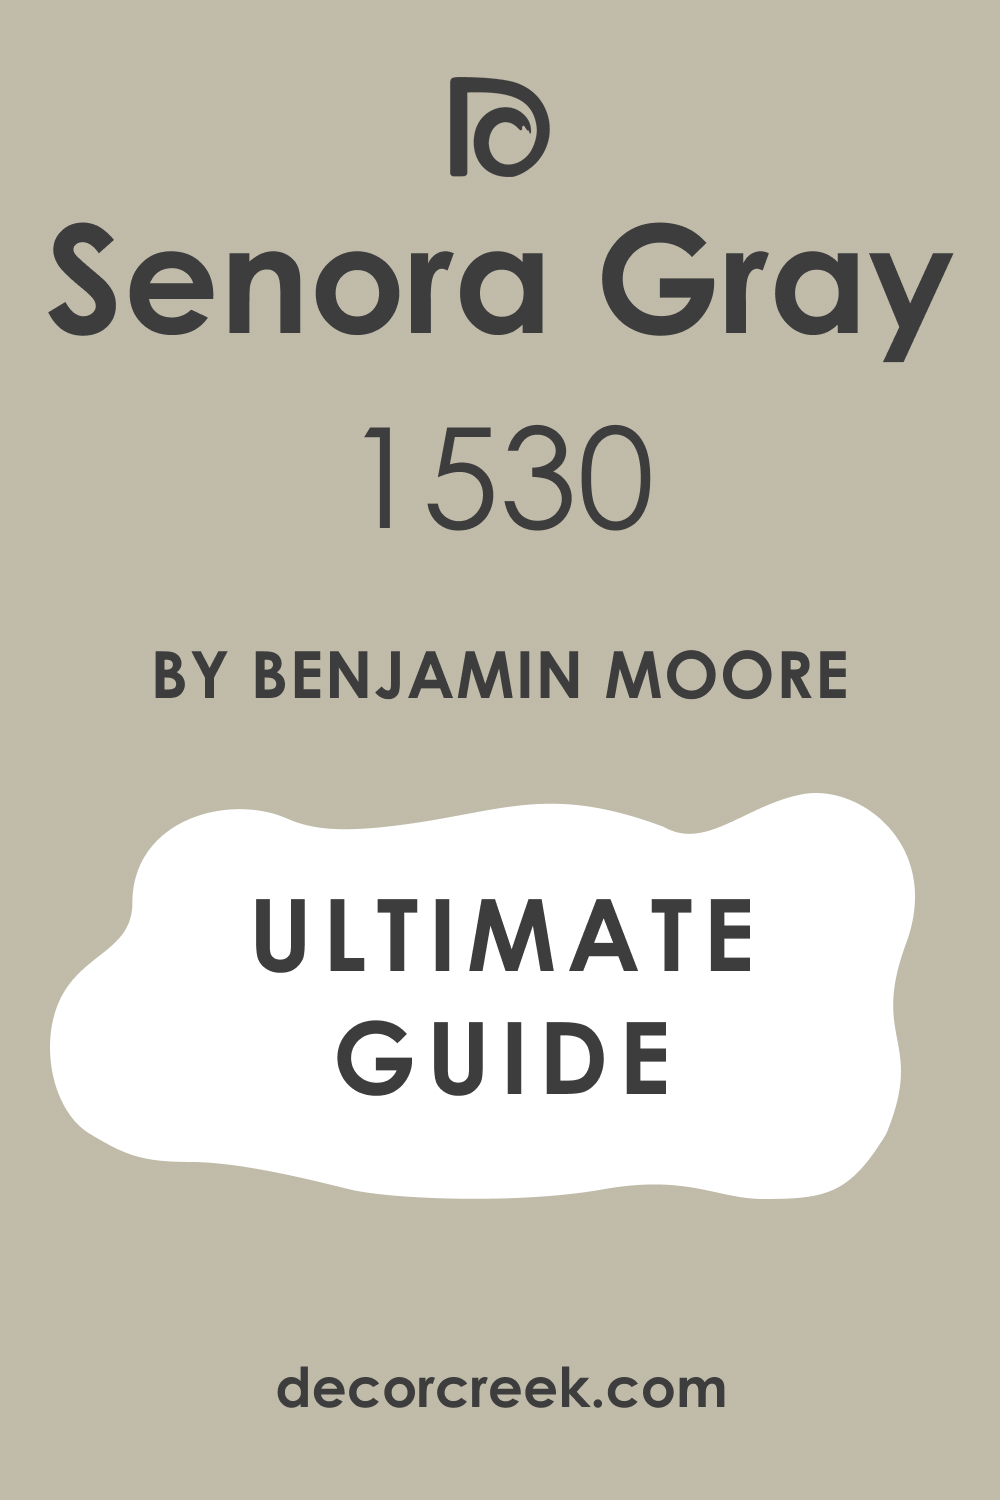 Ultimate Guide of Senora Gray 1530